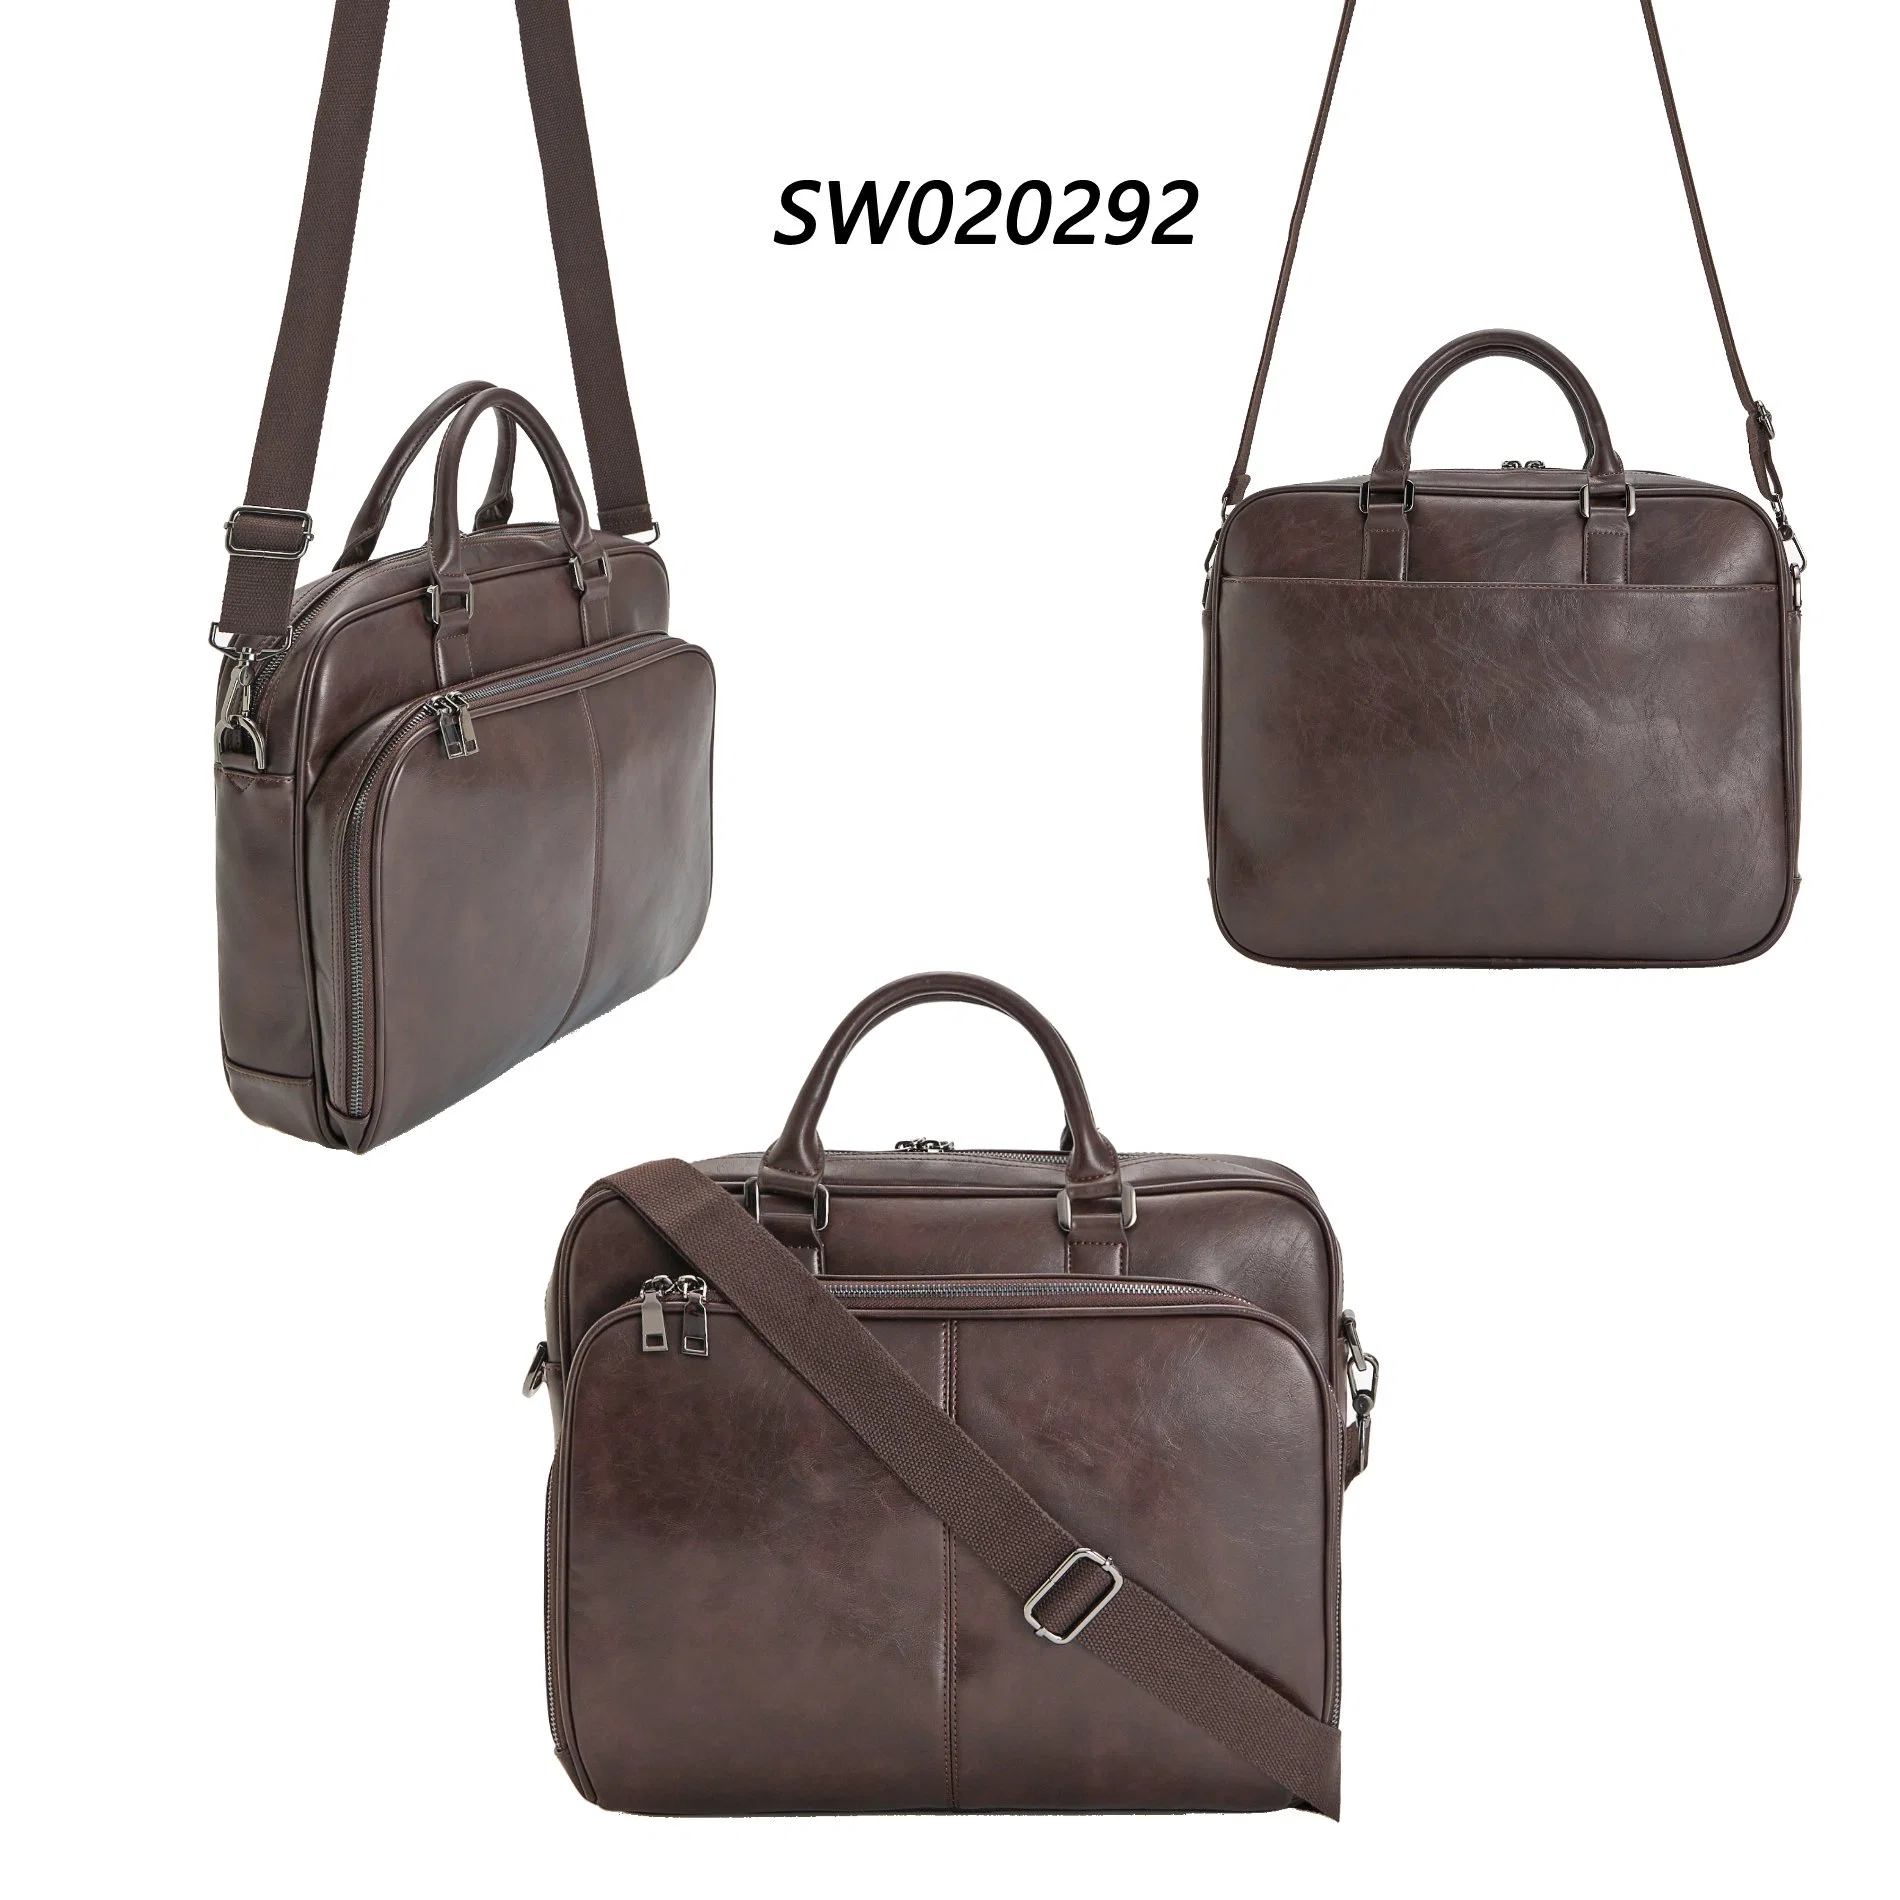 Vintage Laptop Handbag Large Leather Bags Men Business Briefcase Bag